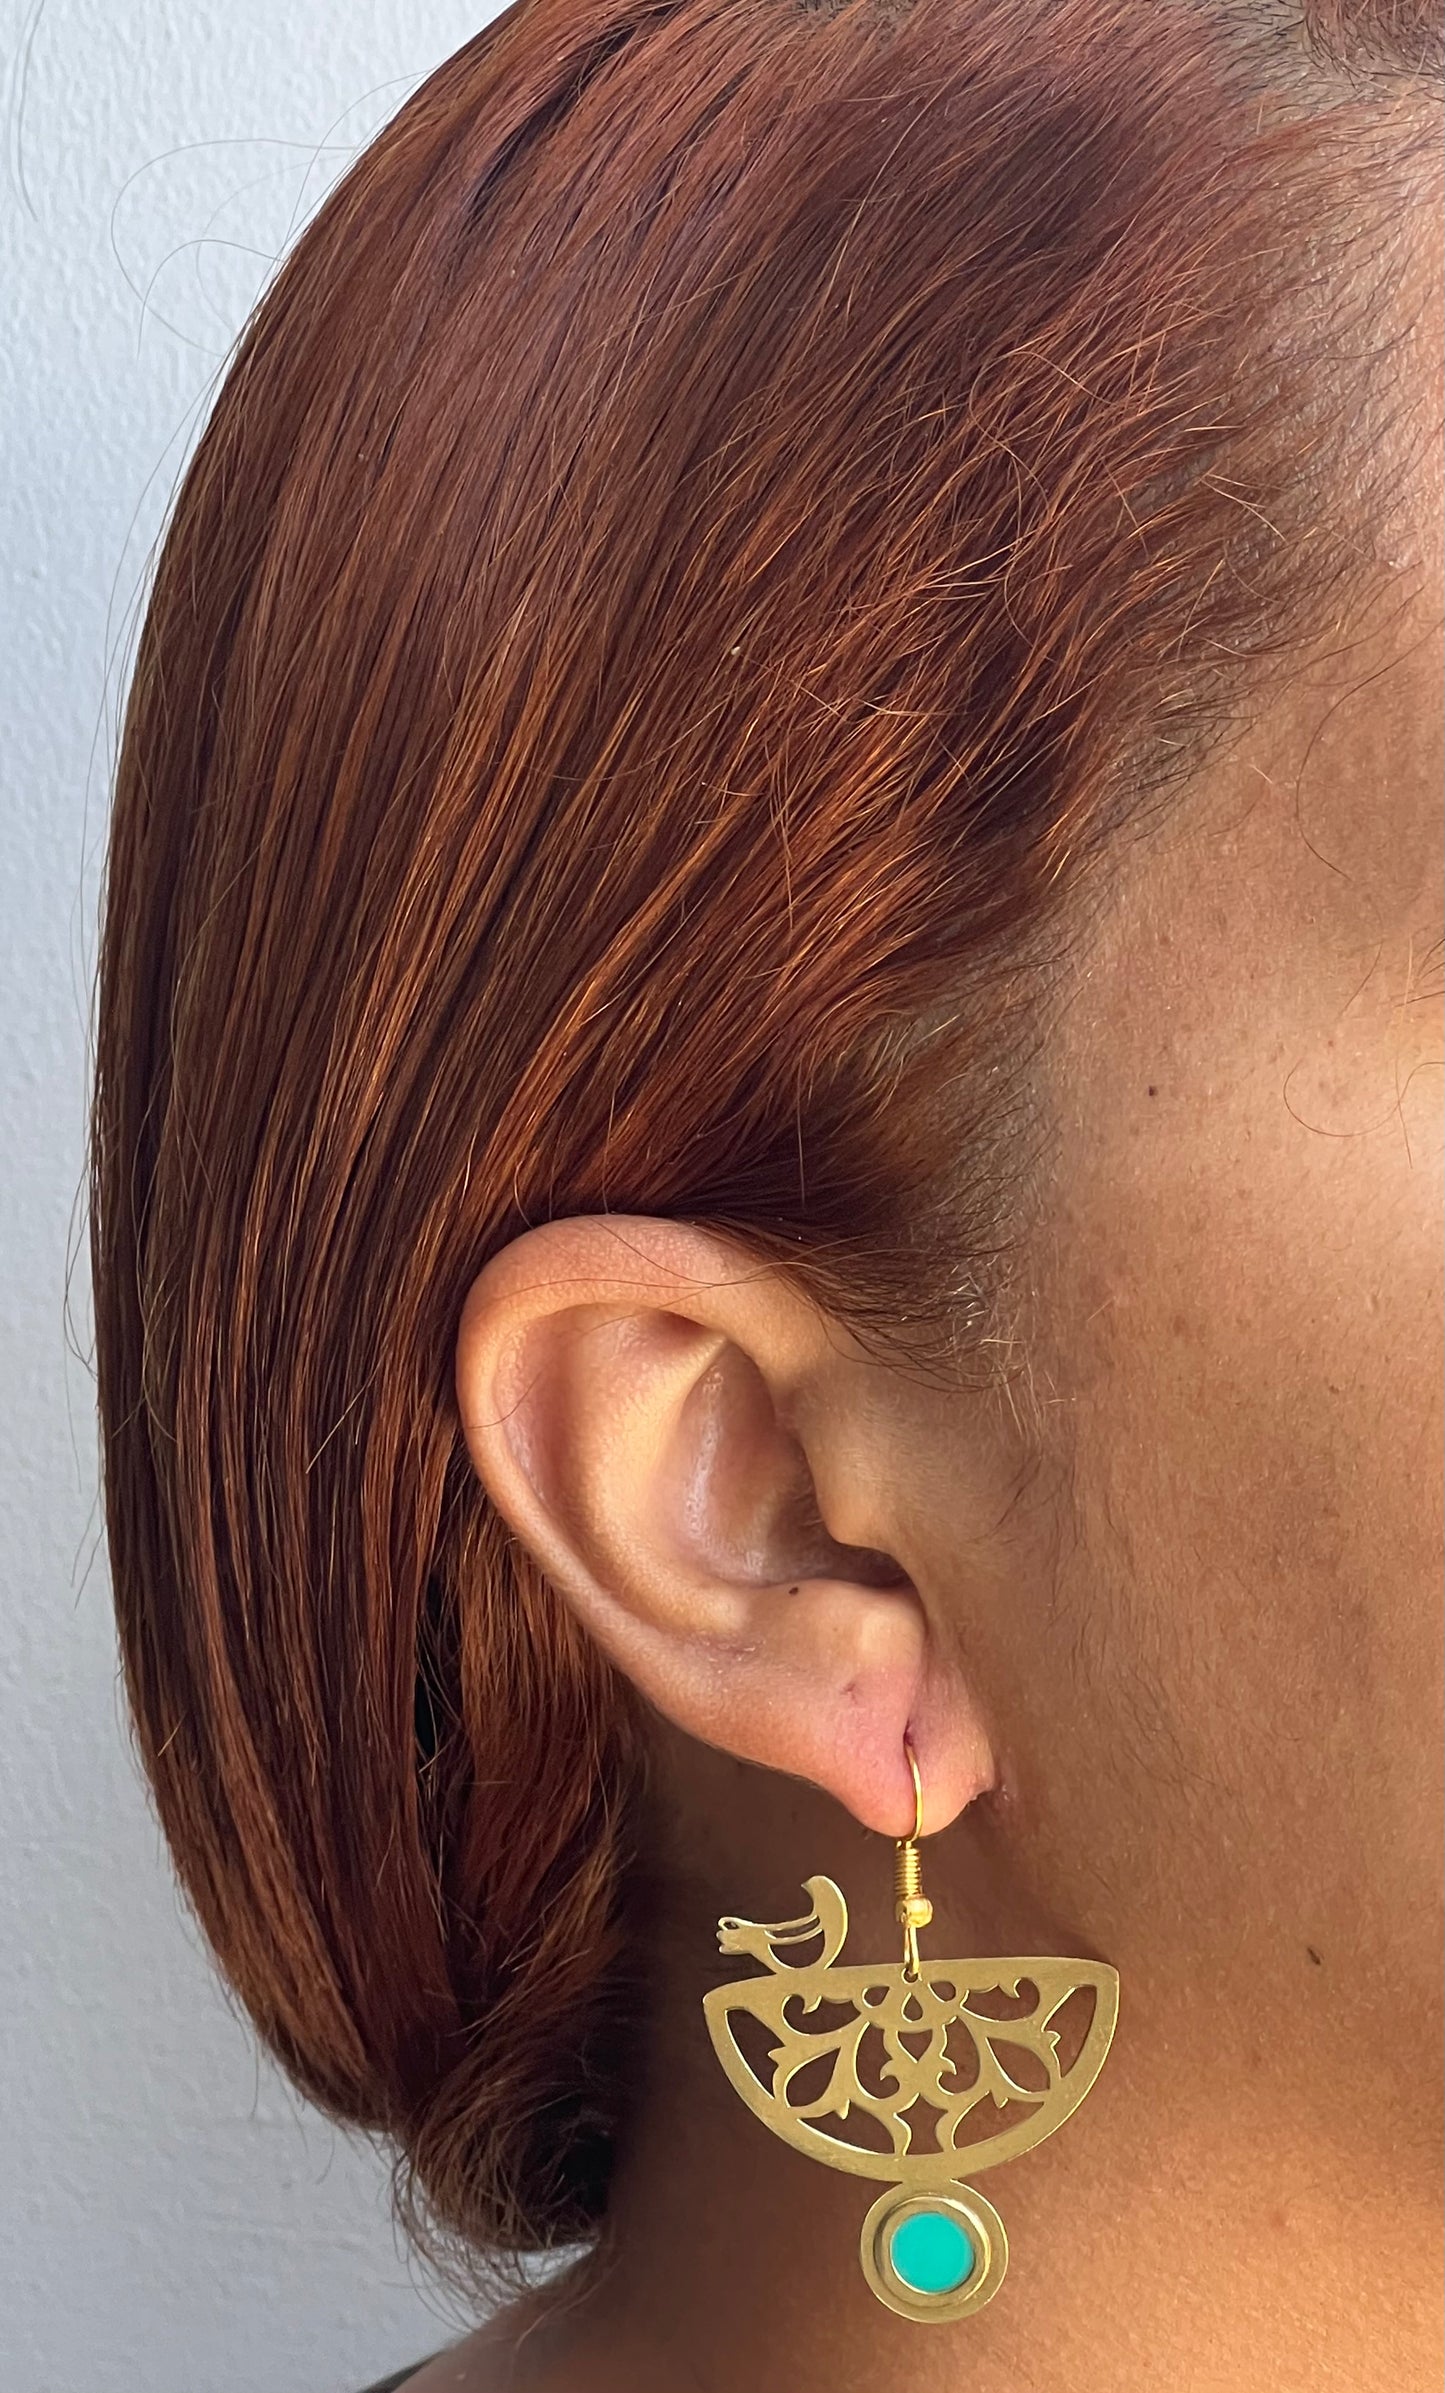 Southern Star Earrings